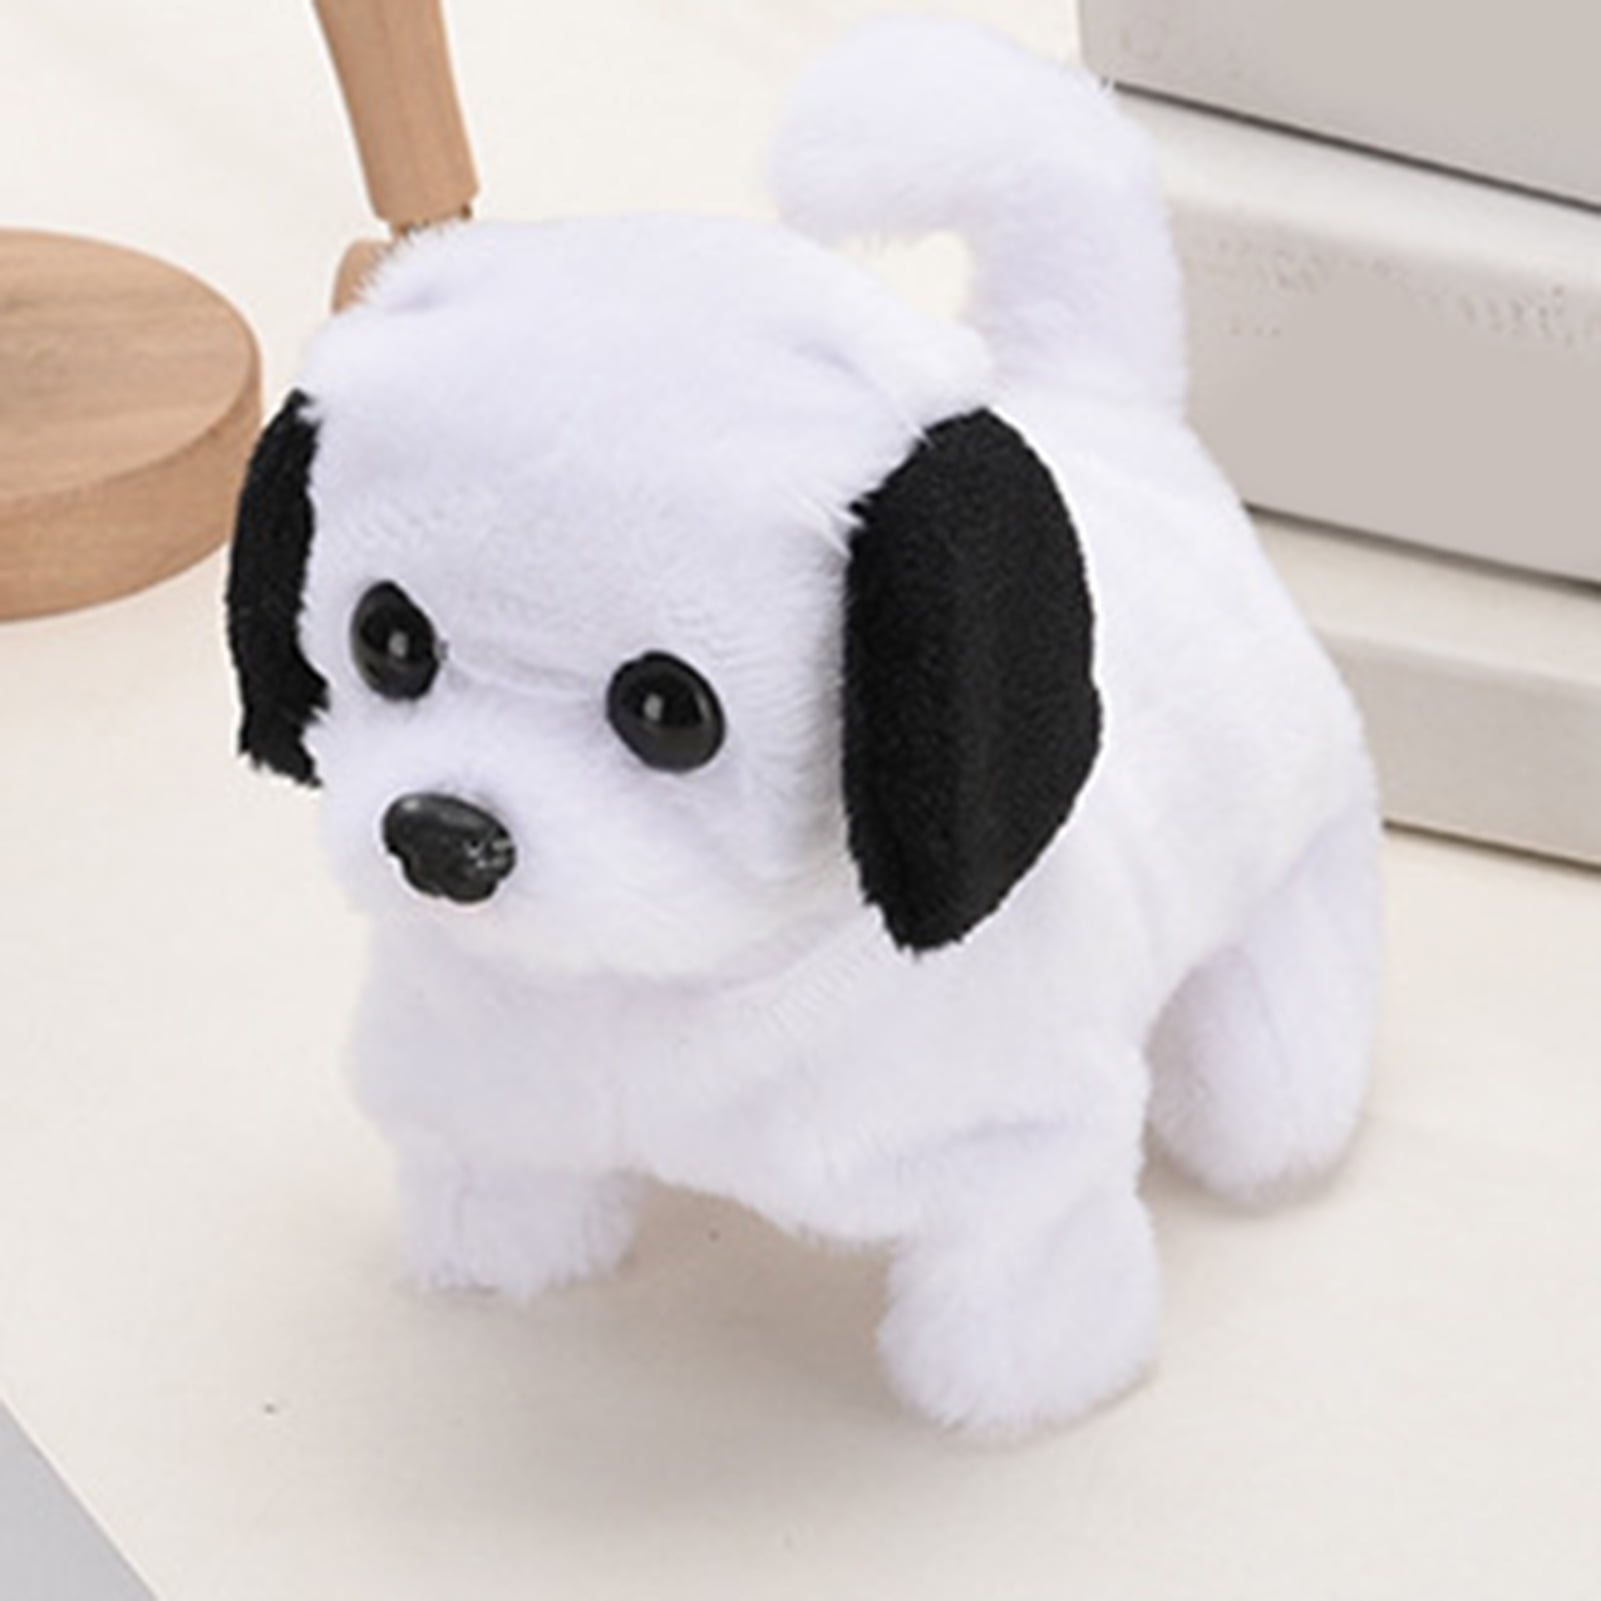 77HD Leash Electric Walking Dog Toy Simulation Singing Puppy Toy